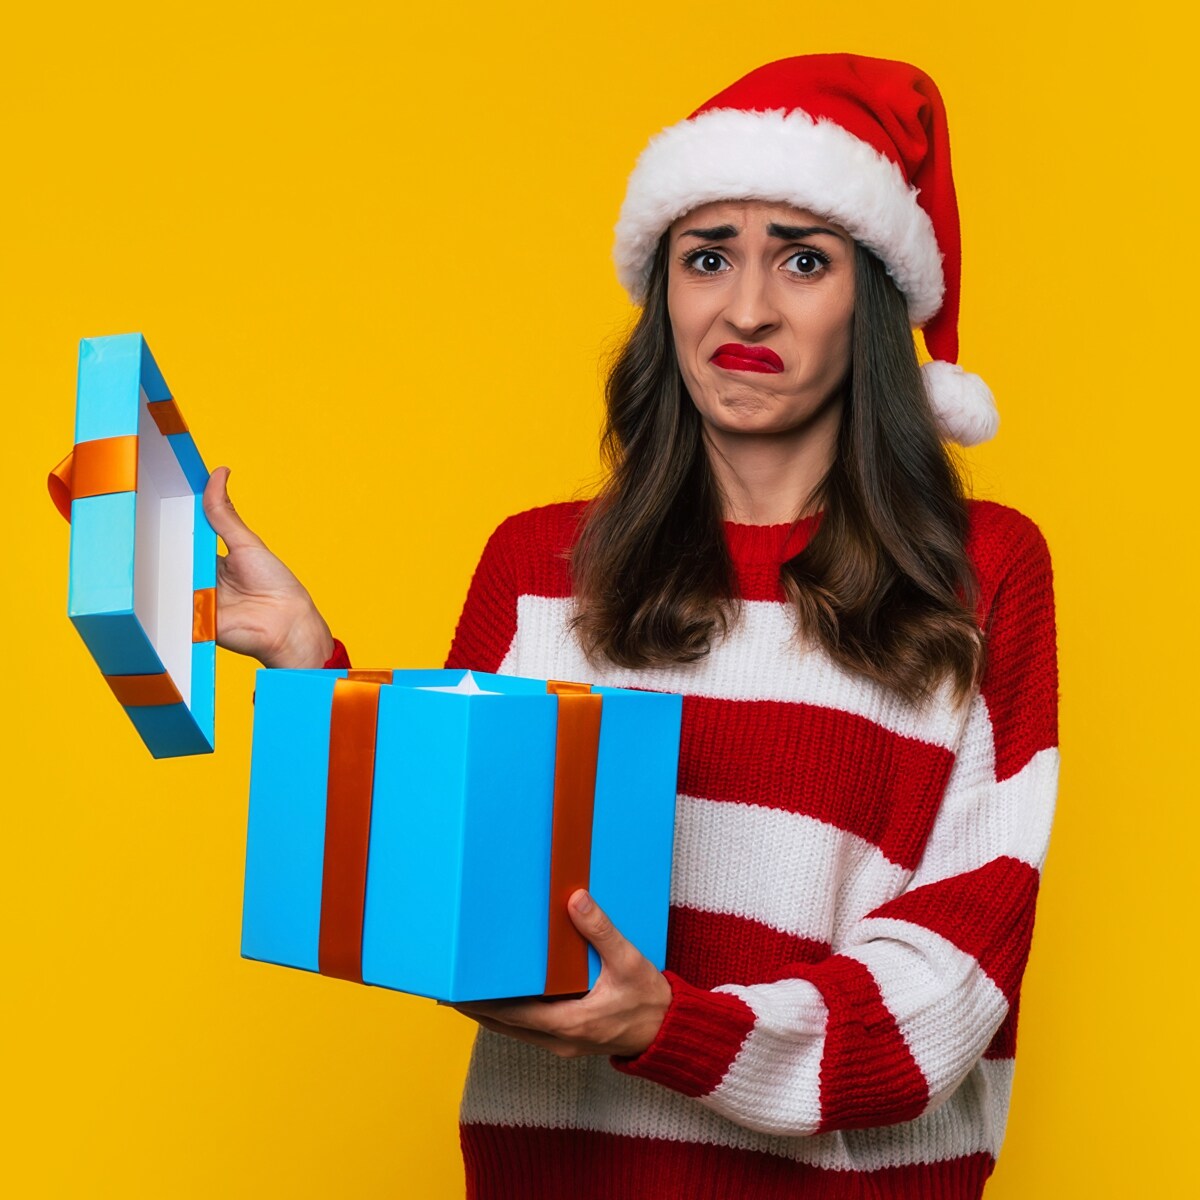 Cómo afecta psicológicamente a los niños el exceso de regalos en Navidad?